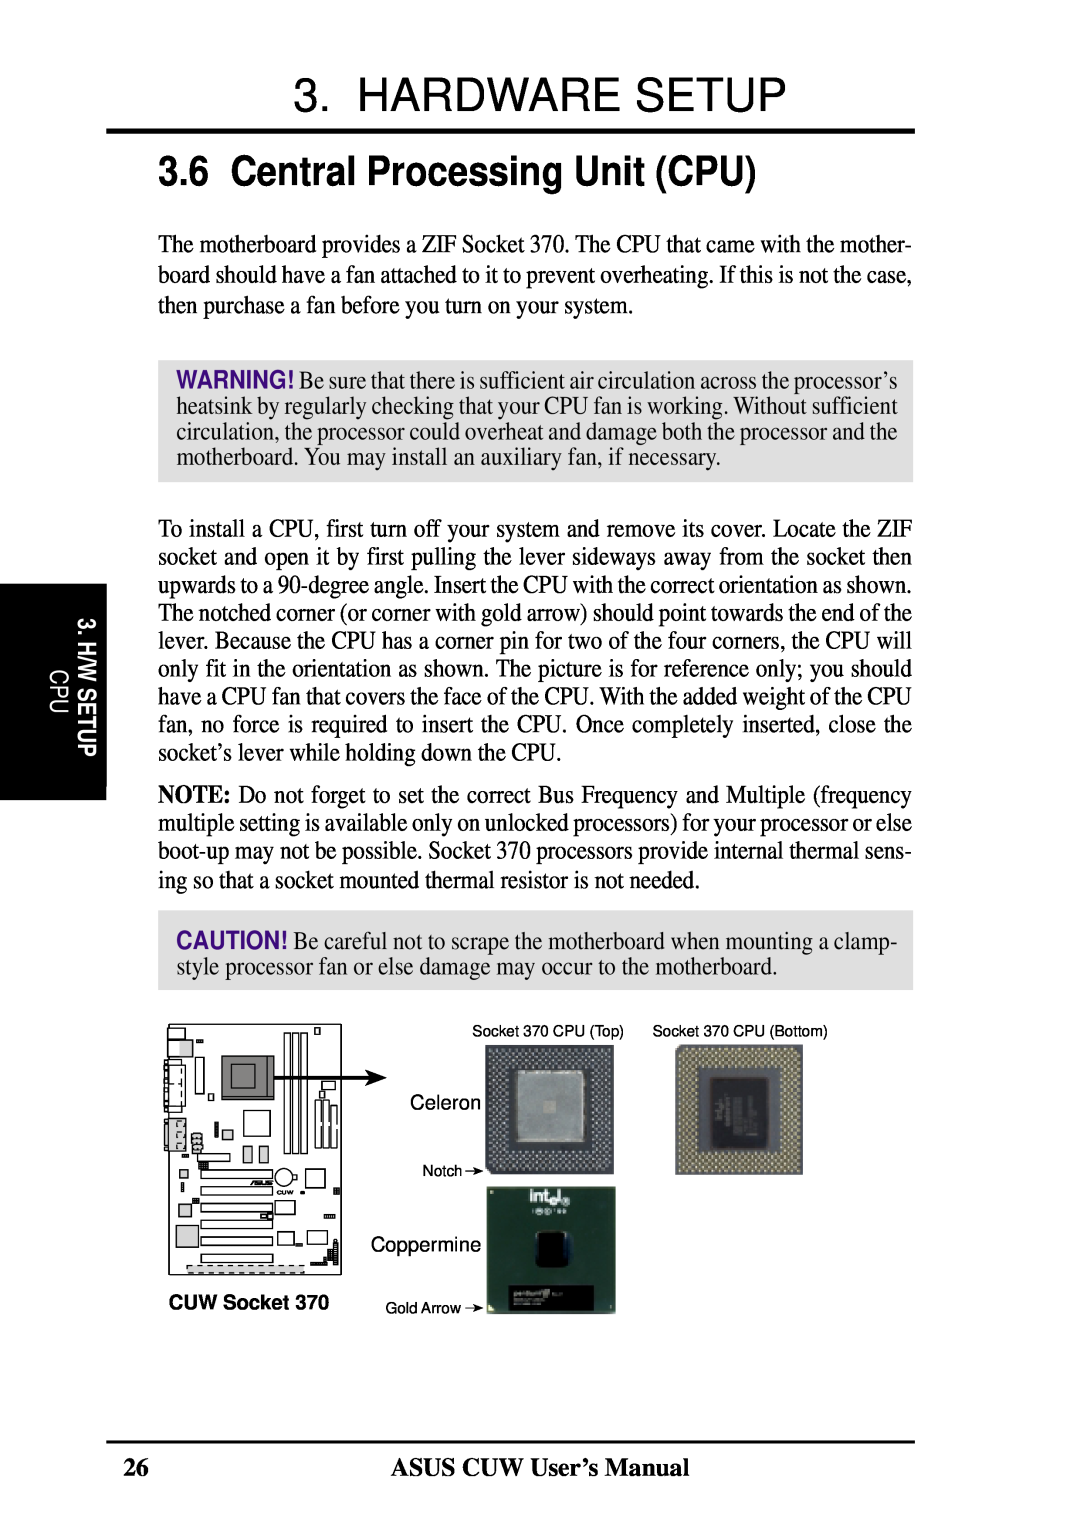 Asus 810 user manual Central Processing Unit CPU, Hardware Setup, ASUS CUW User’s Manual, 3. H/W SETUP CPU 